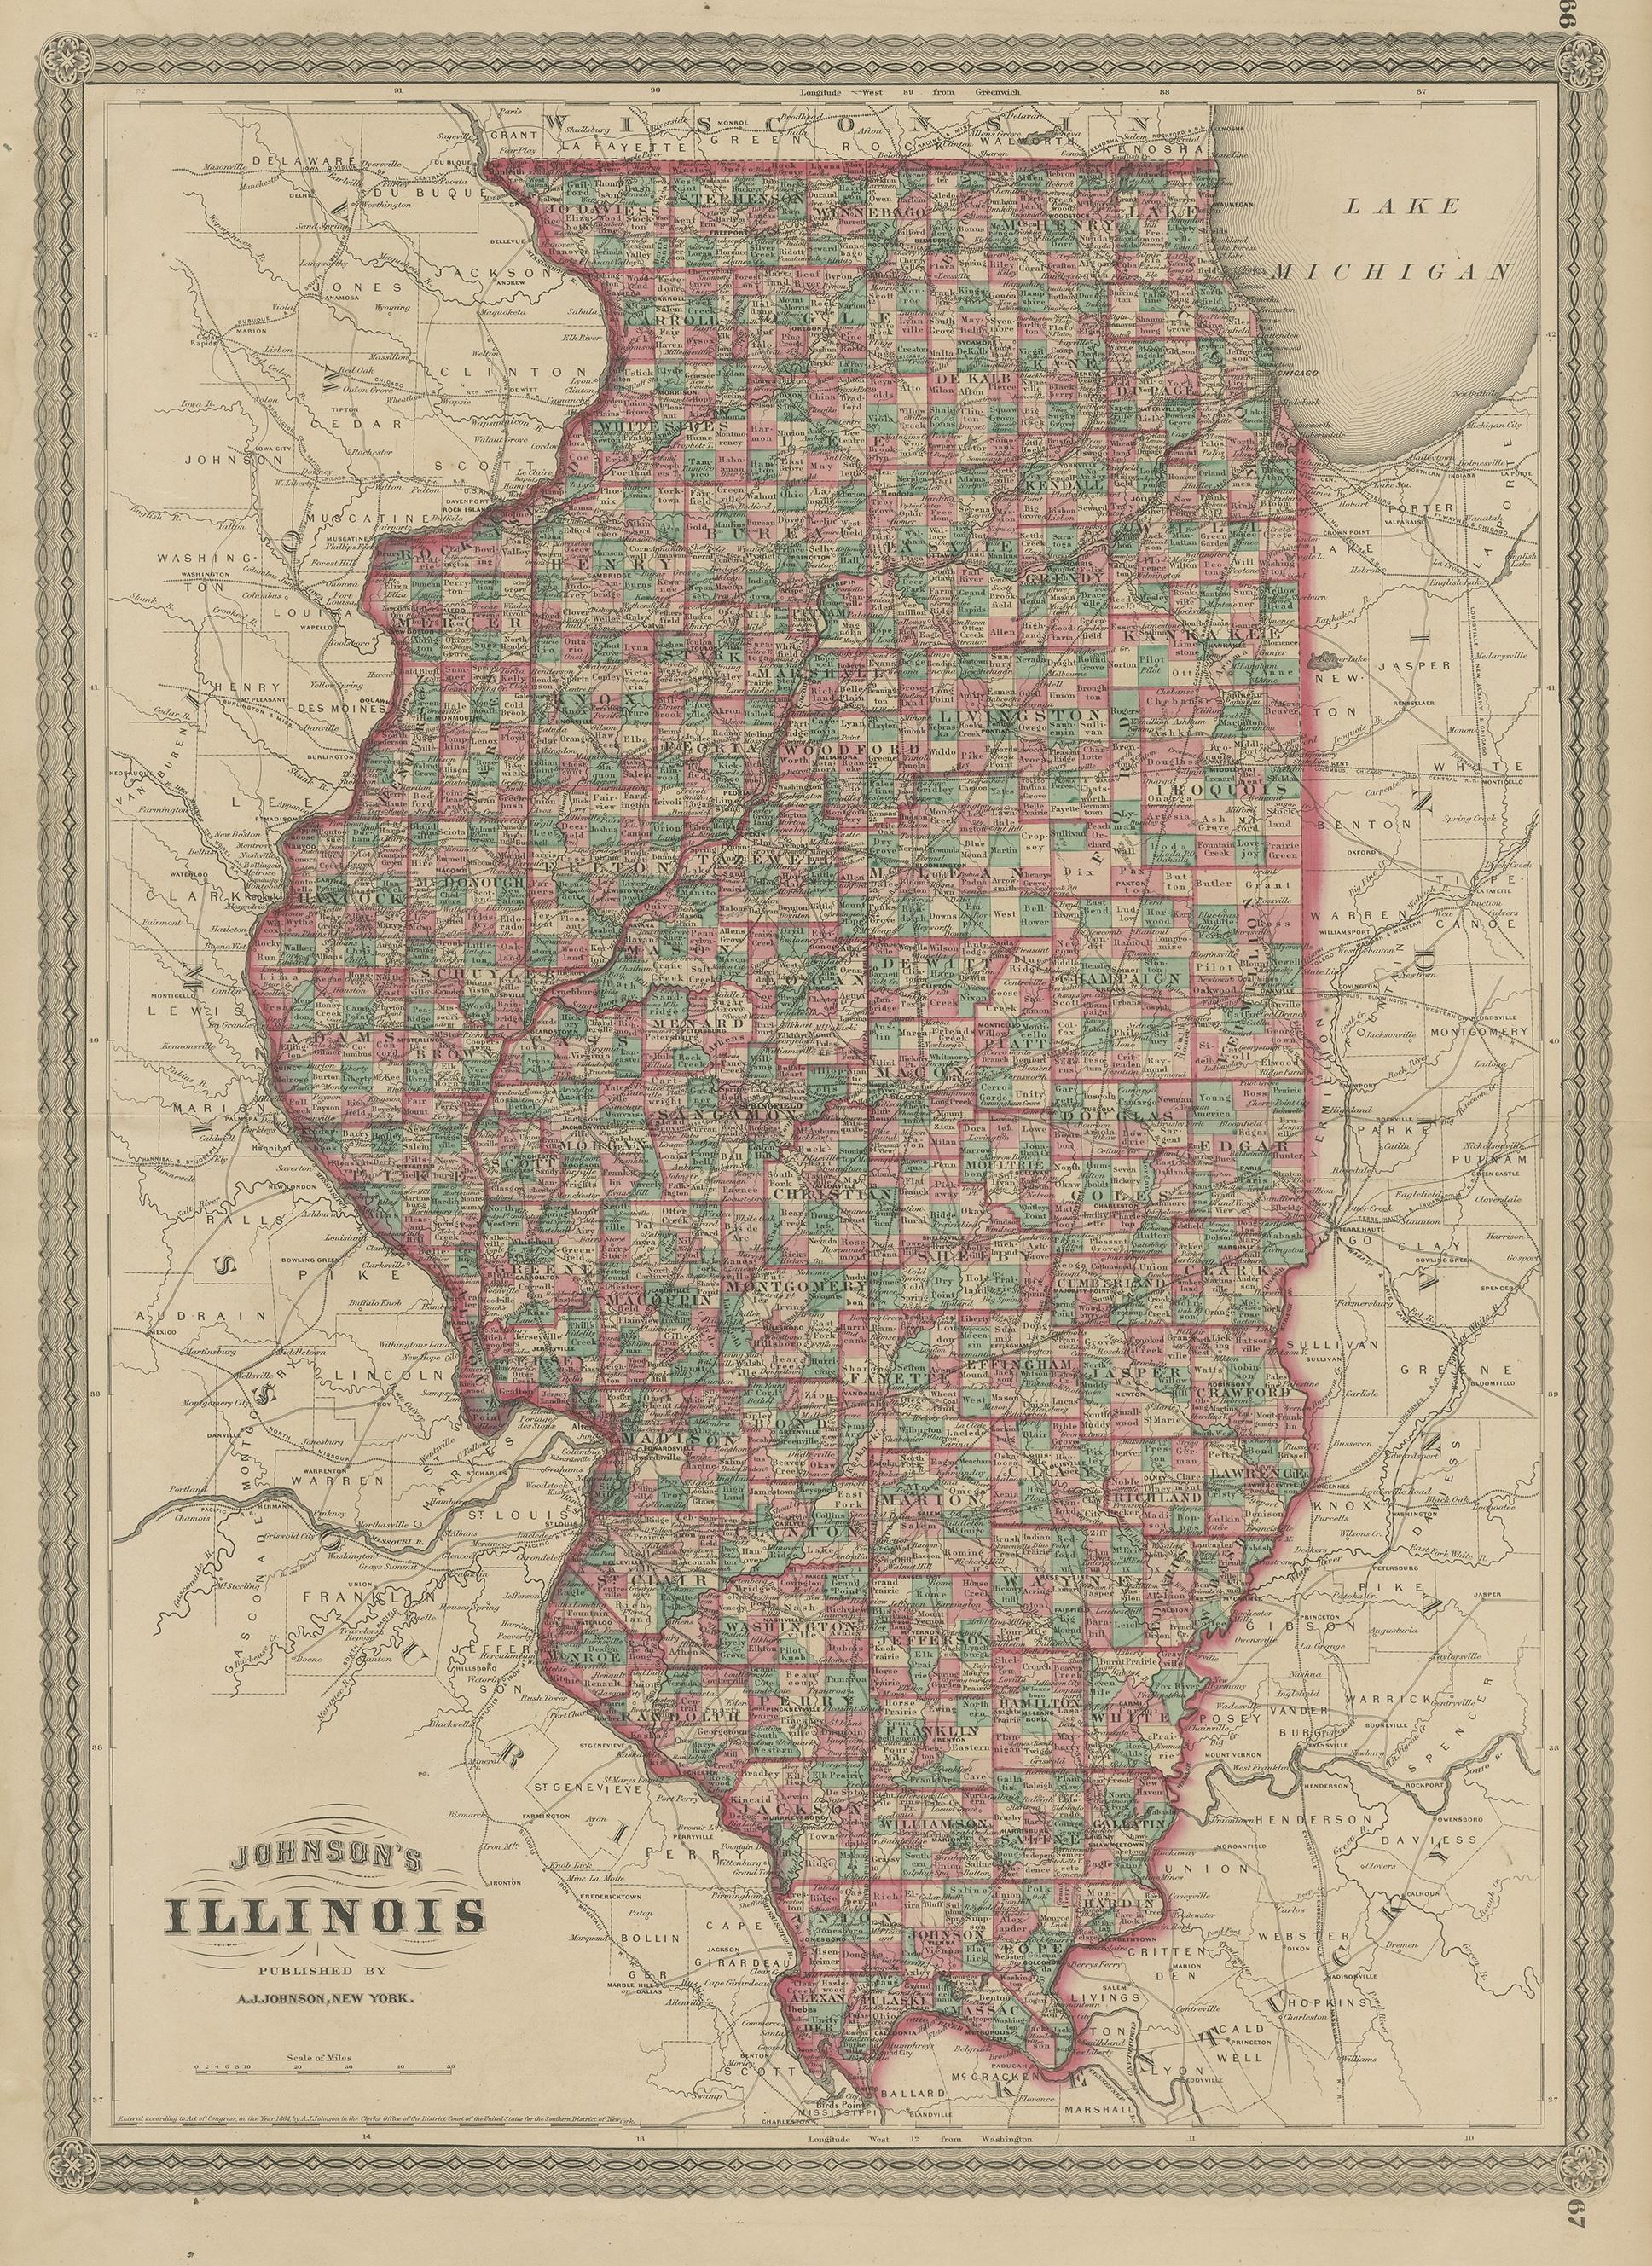 Antike Karte mit dem Titel 'Johnson's Illinois'. Original-Landkarte von Illinois. Diese Karte stammt aus 'Johnson's New Illustrated Family Atlas of the World' von A.J. Johnson. Veröffentlicht, 1872.